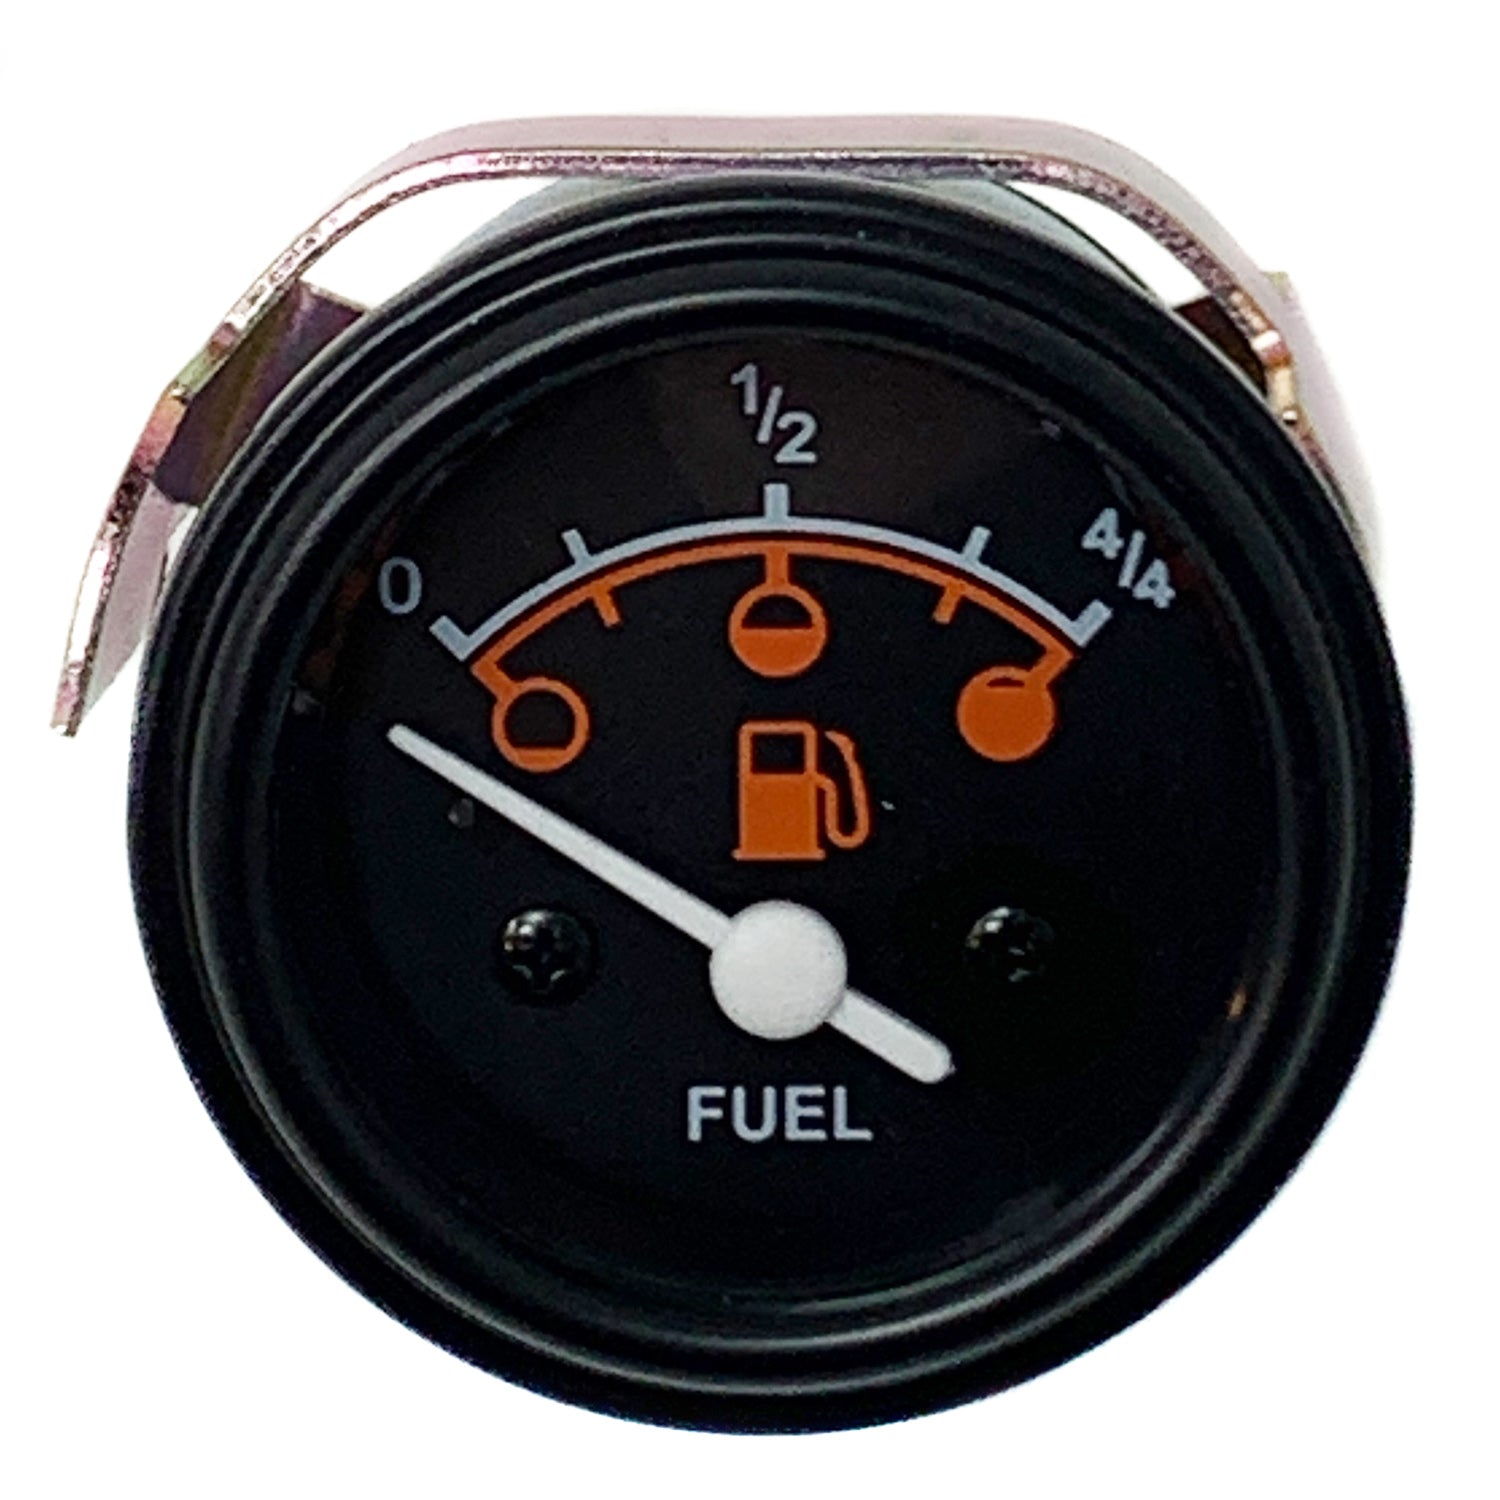 Duraforce 6560353, Fuel Gauge For Bobcat